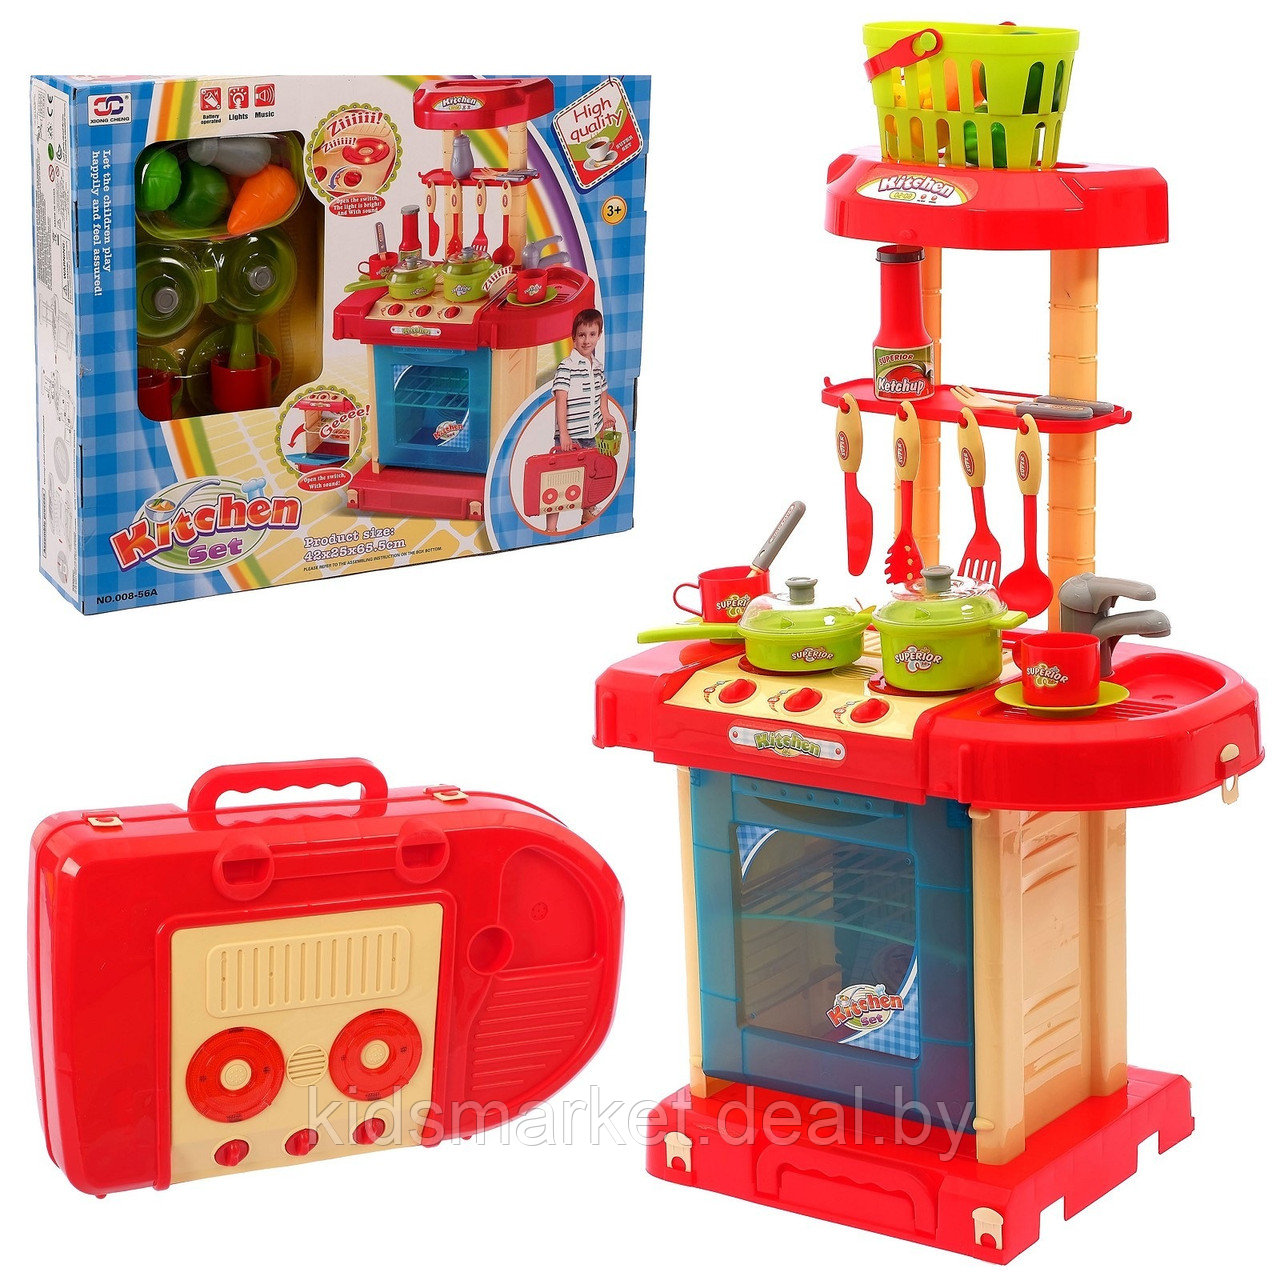 Детская Кухня Kitchen Set 008-56A в чемоданчике со светом и звуком